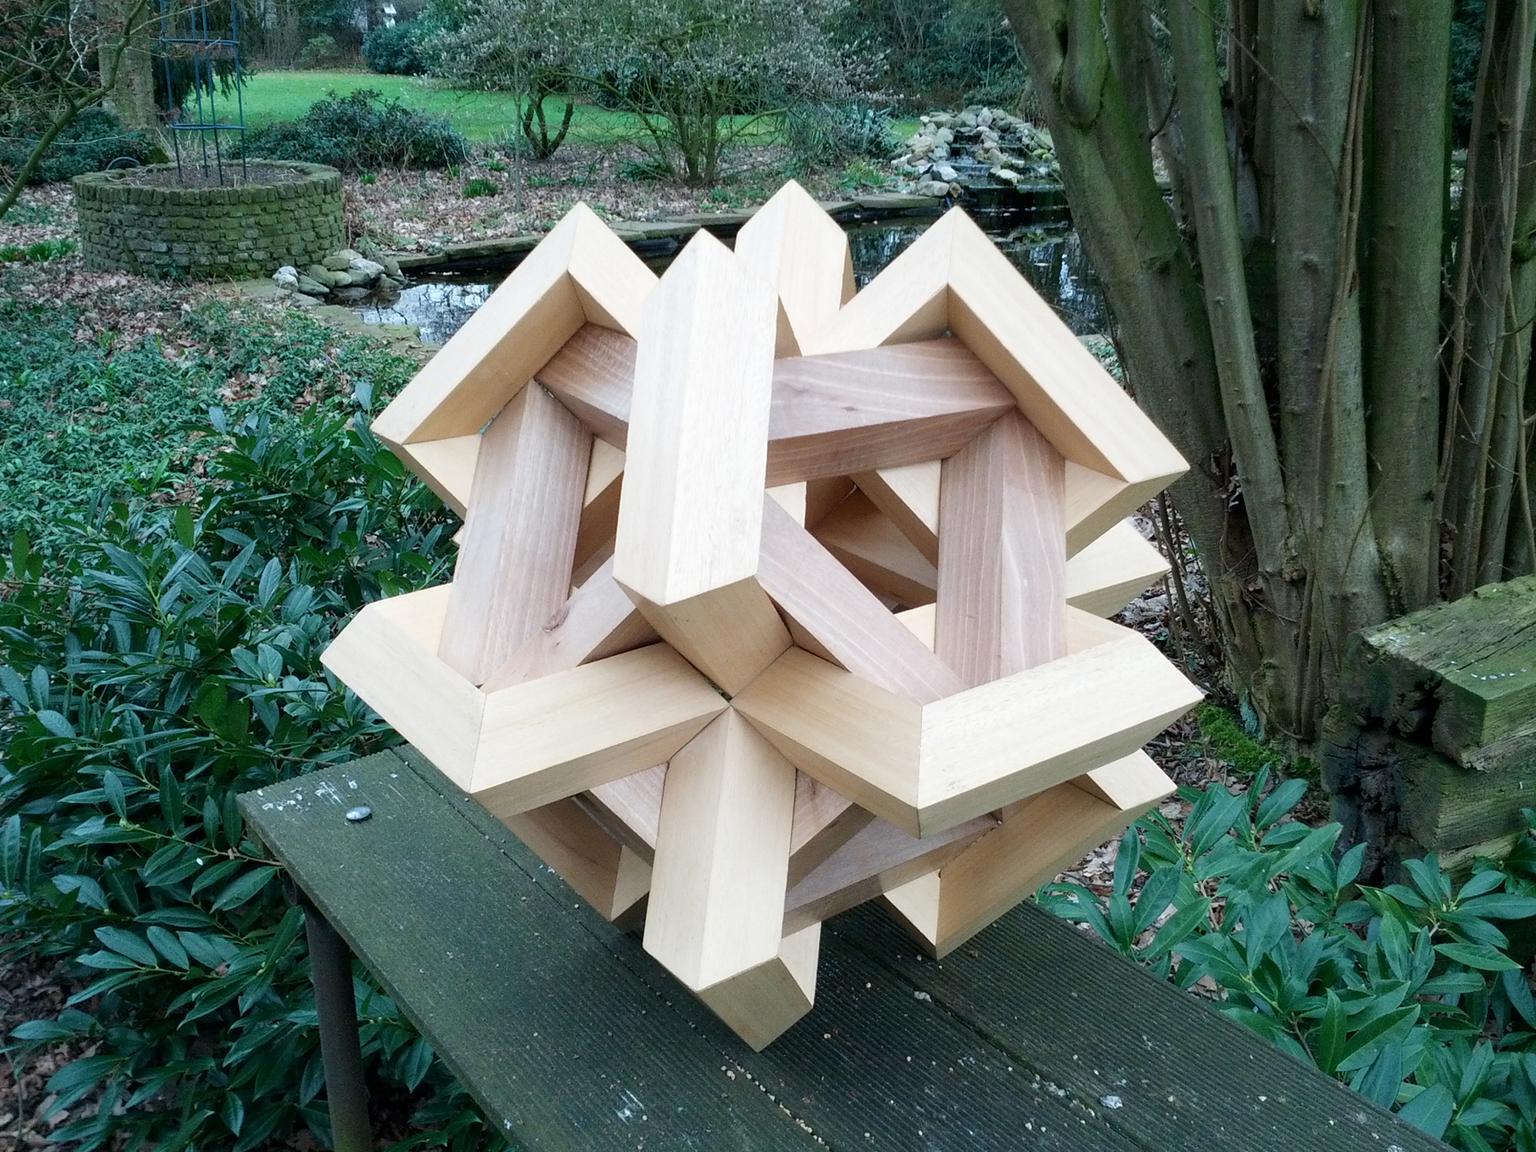 Image for entry 'Cuboctahedron of Linked Frames'